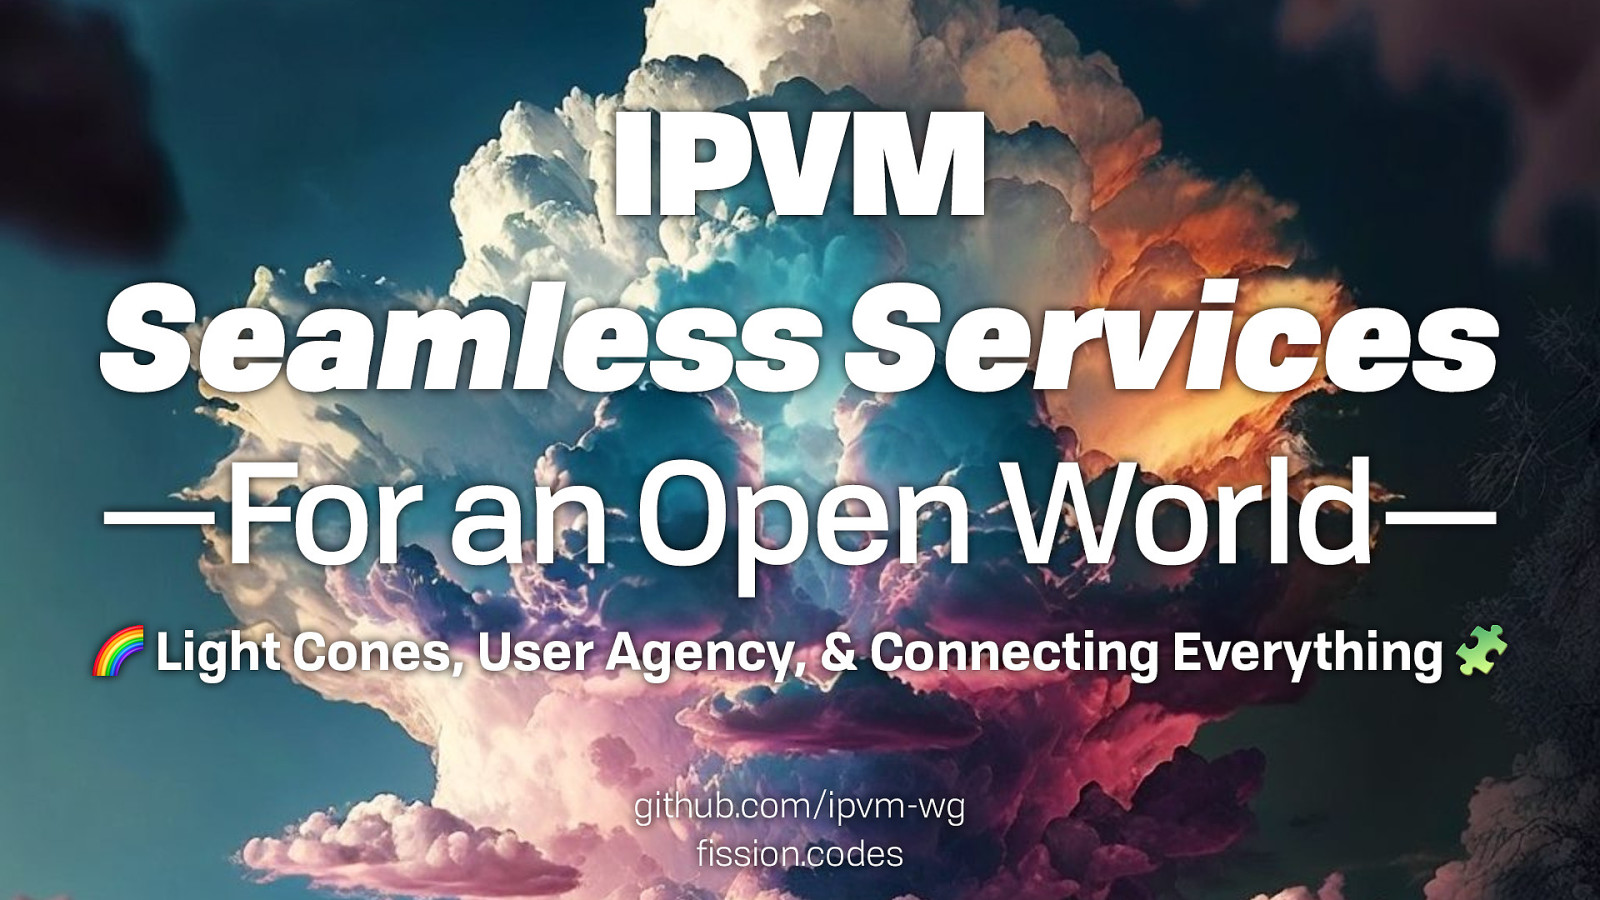 IPVM: Seamless Services for an Open World